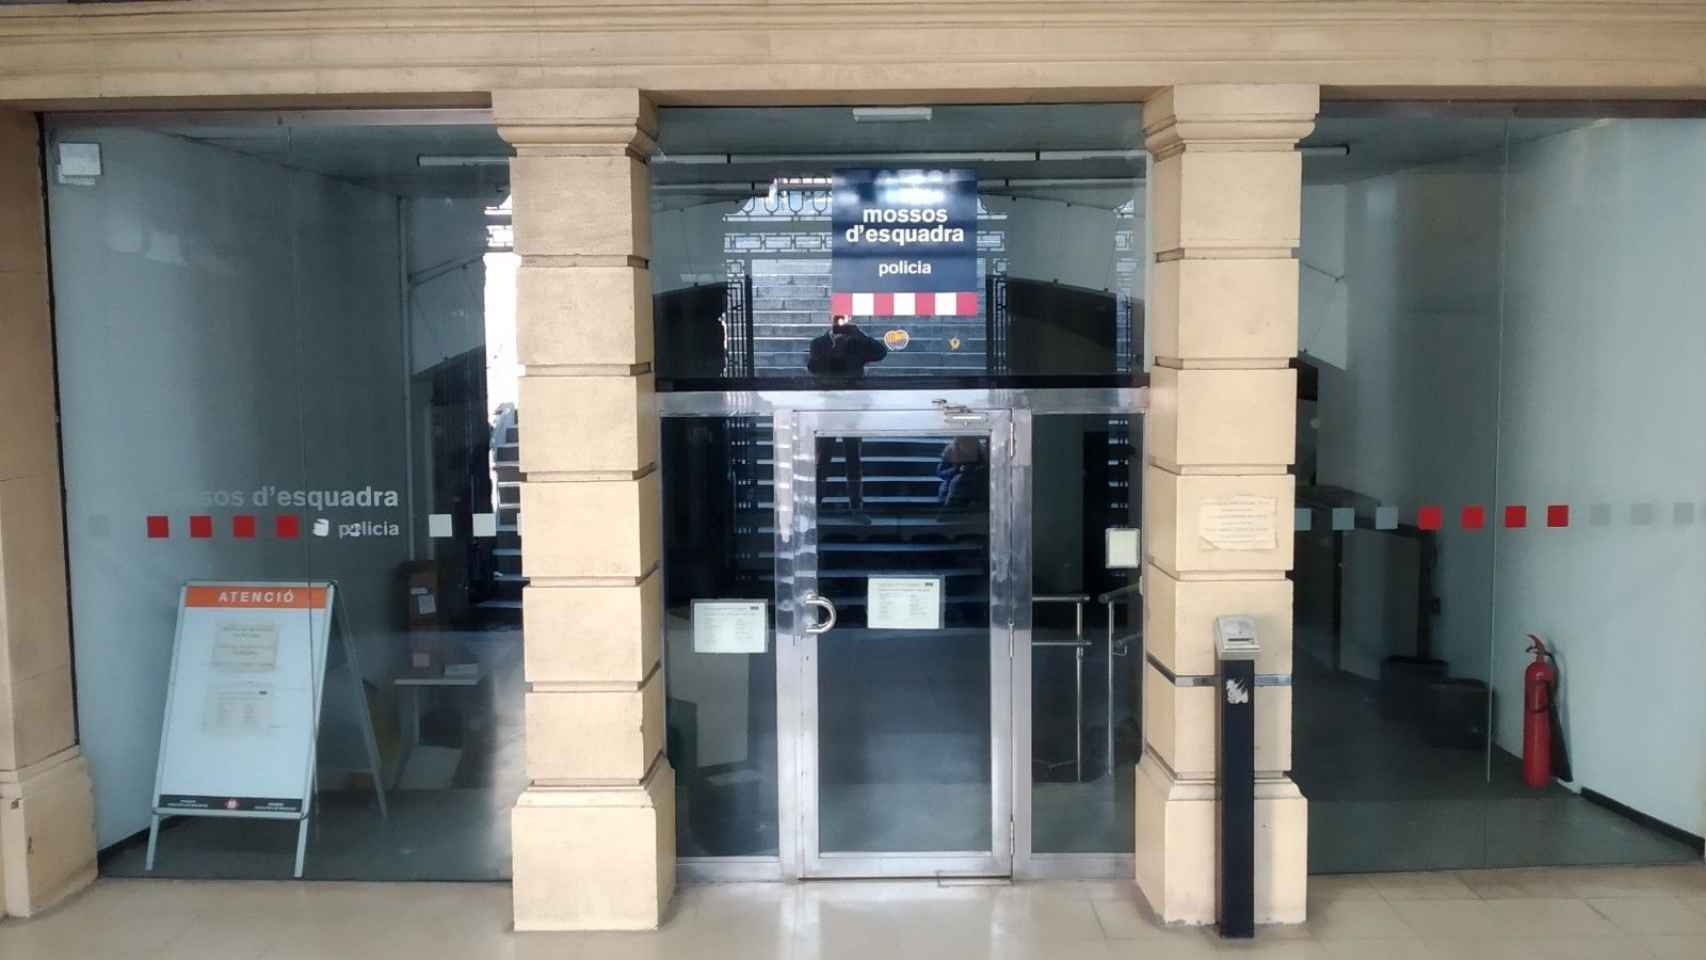 La comisaría de los Mossos de la plaza de Catalunya lleva un año y media cerrada / JORDI SUBIRANA